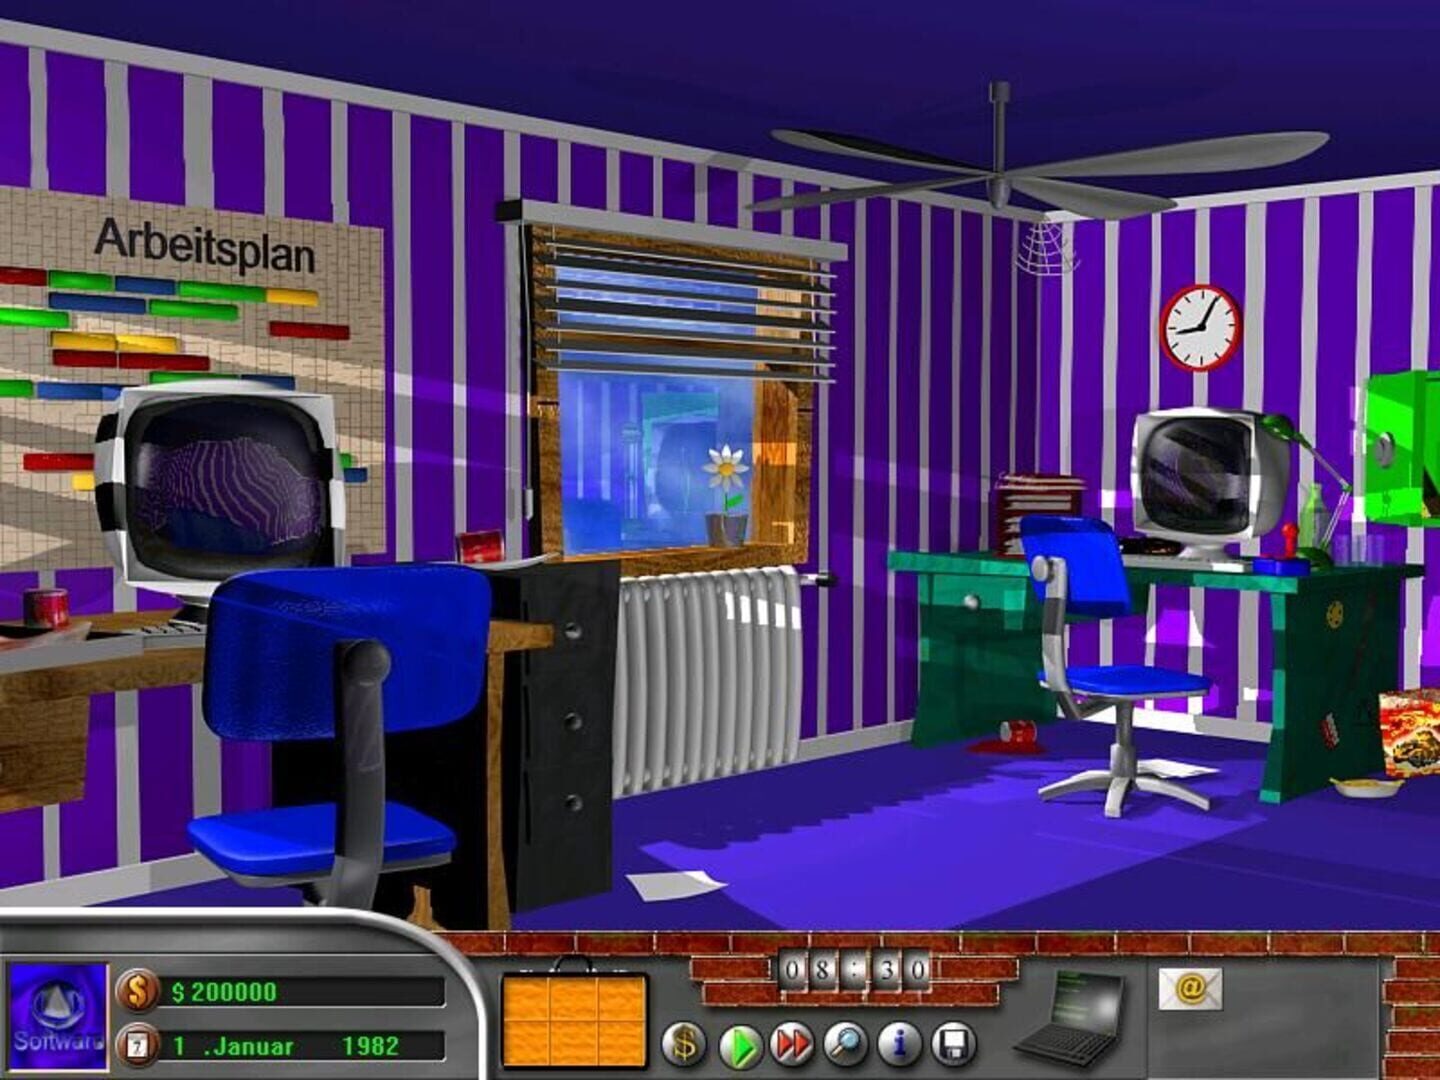 Captura de pantalla - Software Tycoon: Der Spielemanager